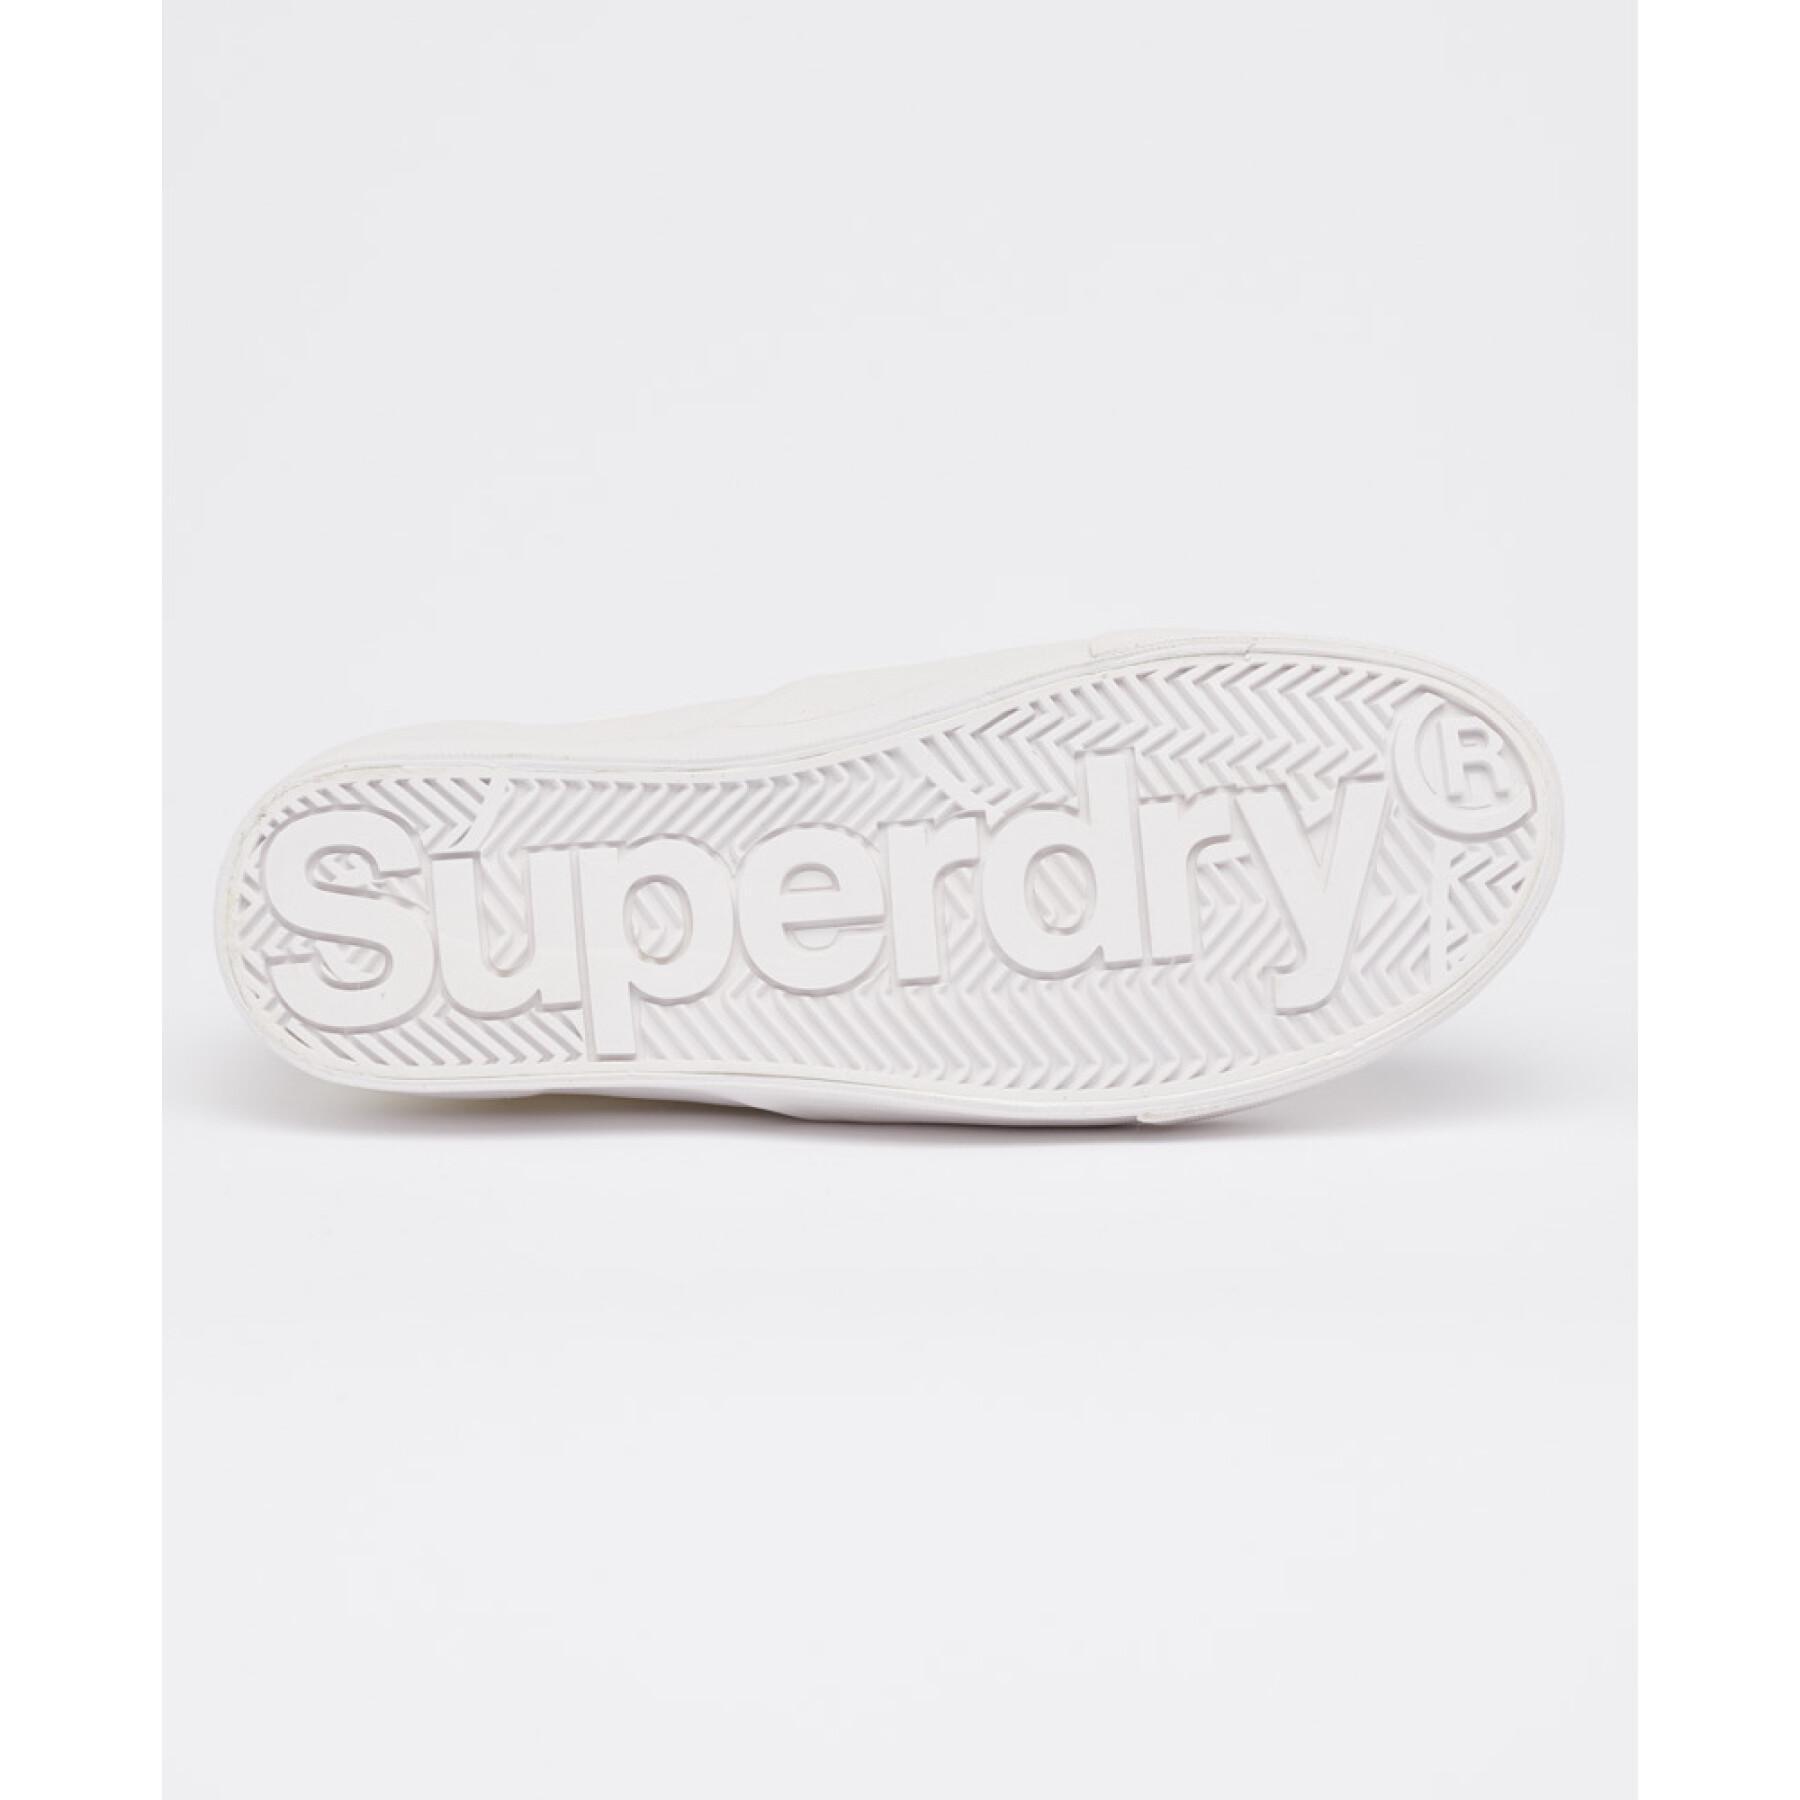 Scarpe da ginnastica da donna Superdry Premium